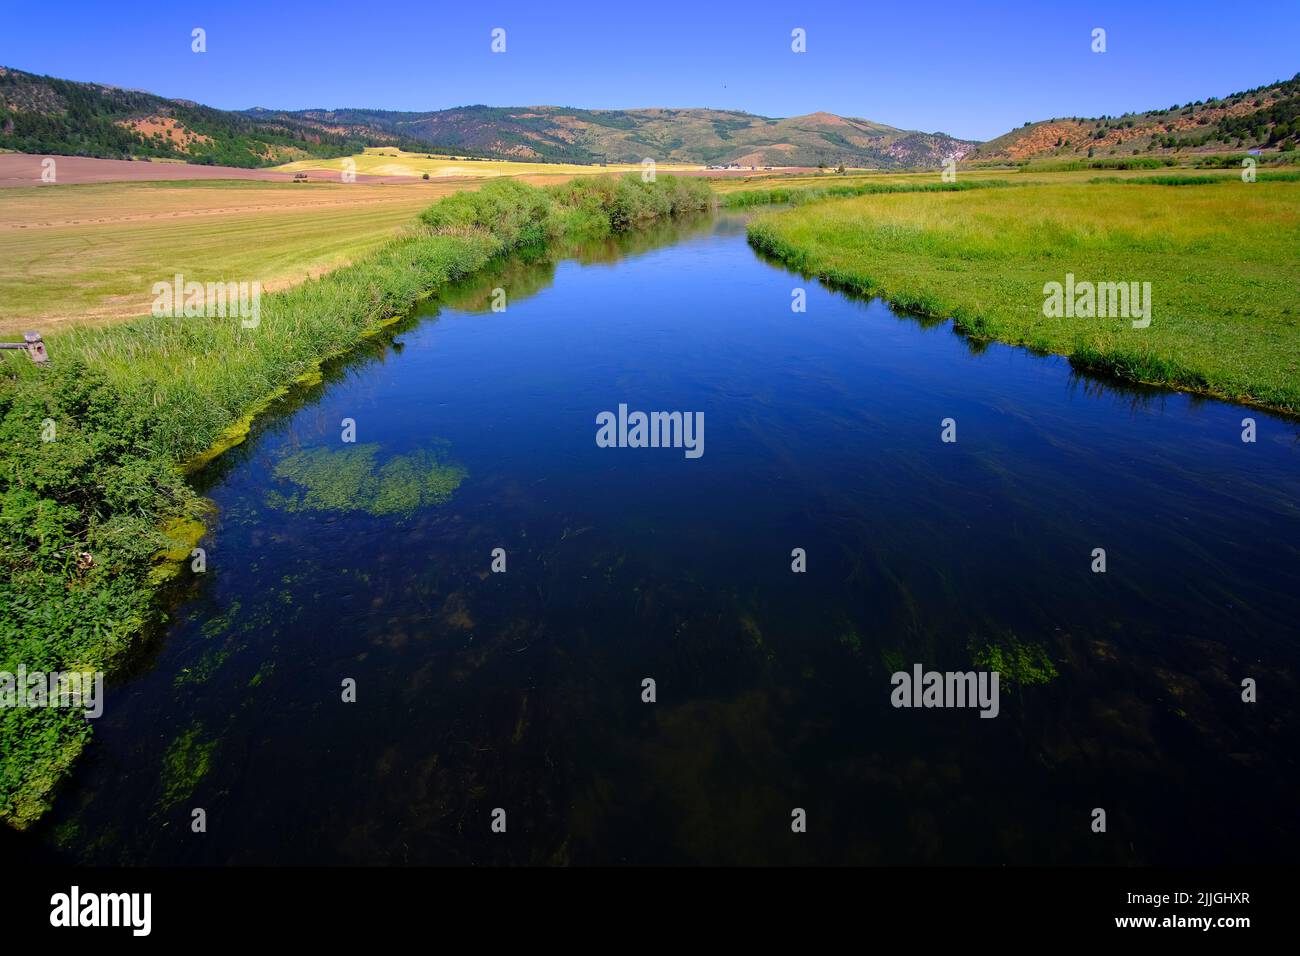 Estrea azul o río de agua corriente en el valle que refleja el cielo azul y las nubes Foto de stock